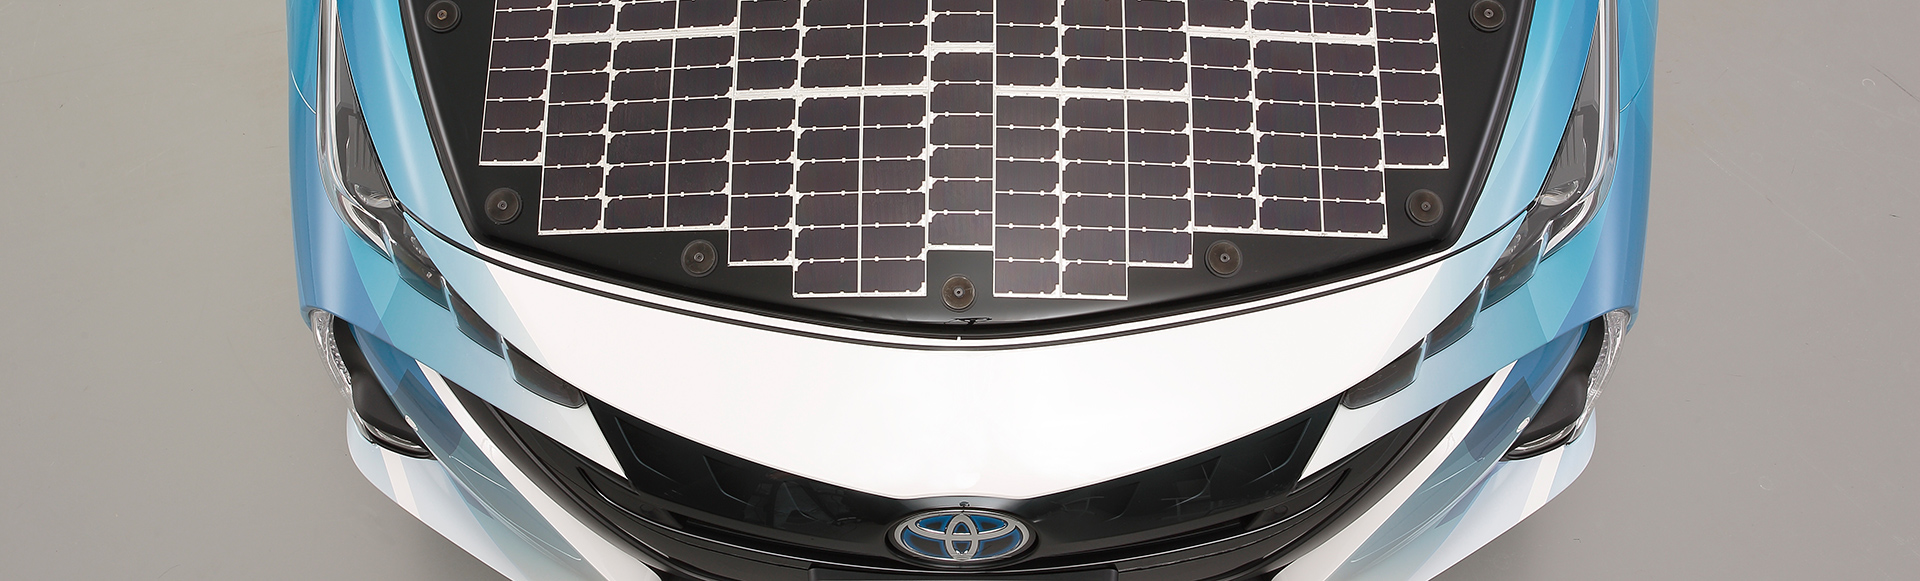 世界最高水準の高効率太陽電池を搭載した電動車の公道走行実証を開始